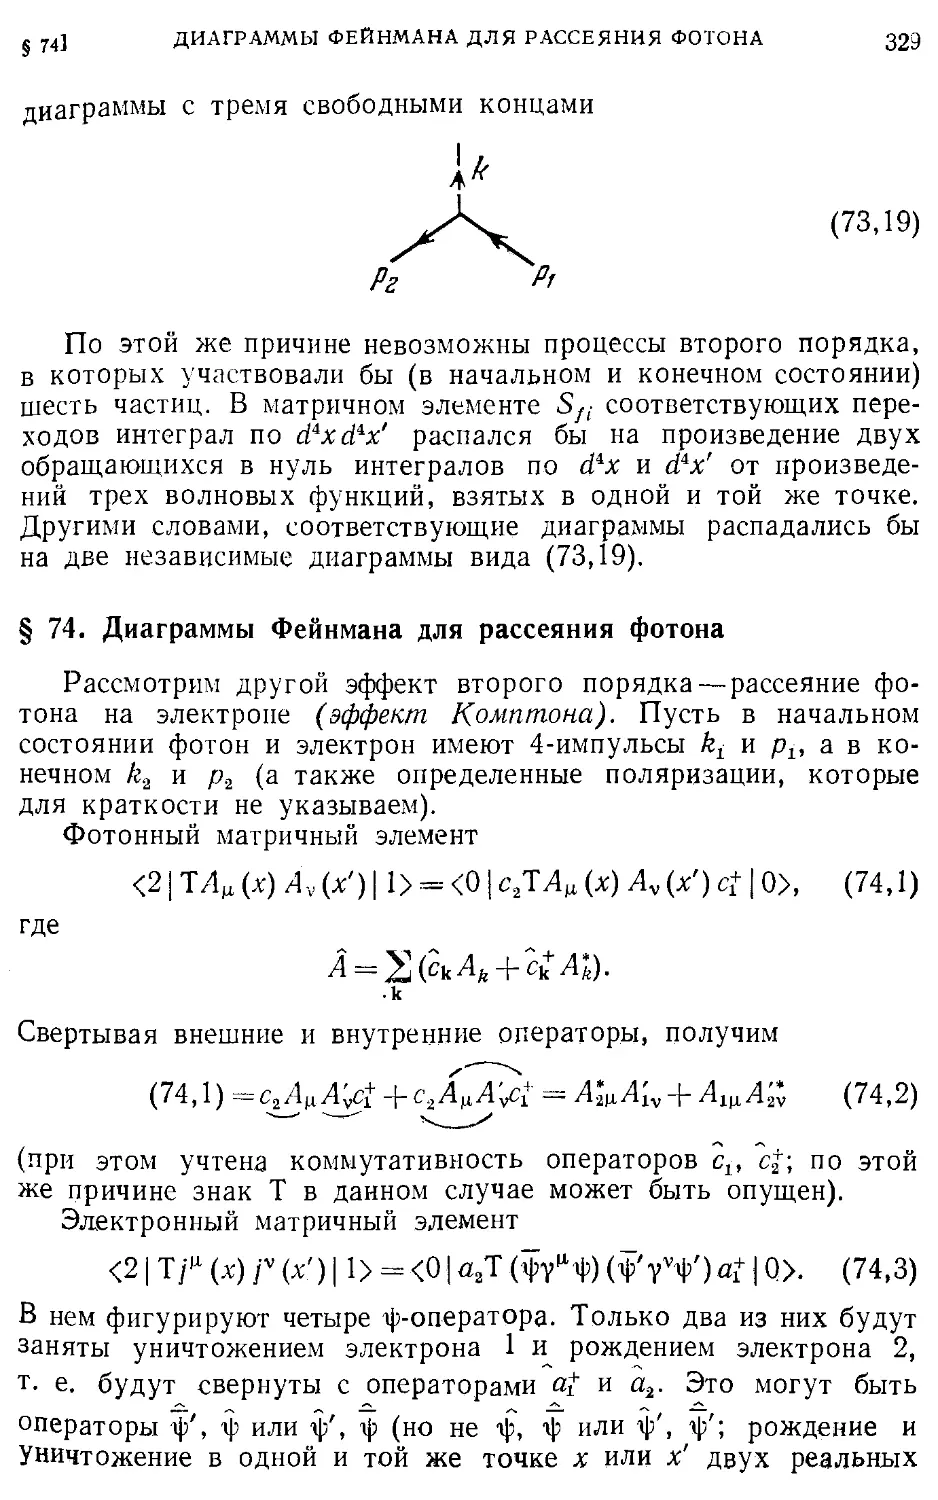 § 74. Диаграммы Фейнмана для рассеяния фотона